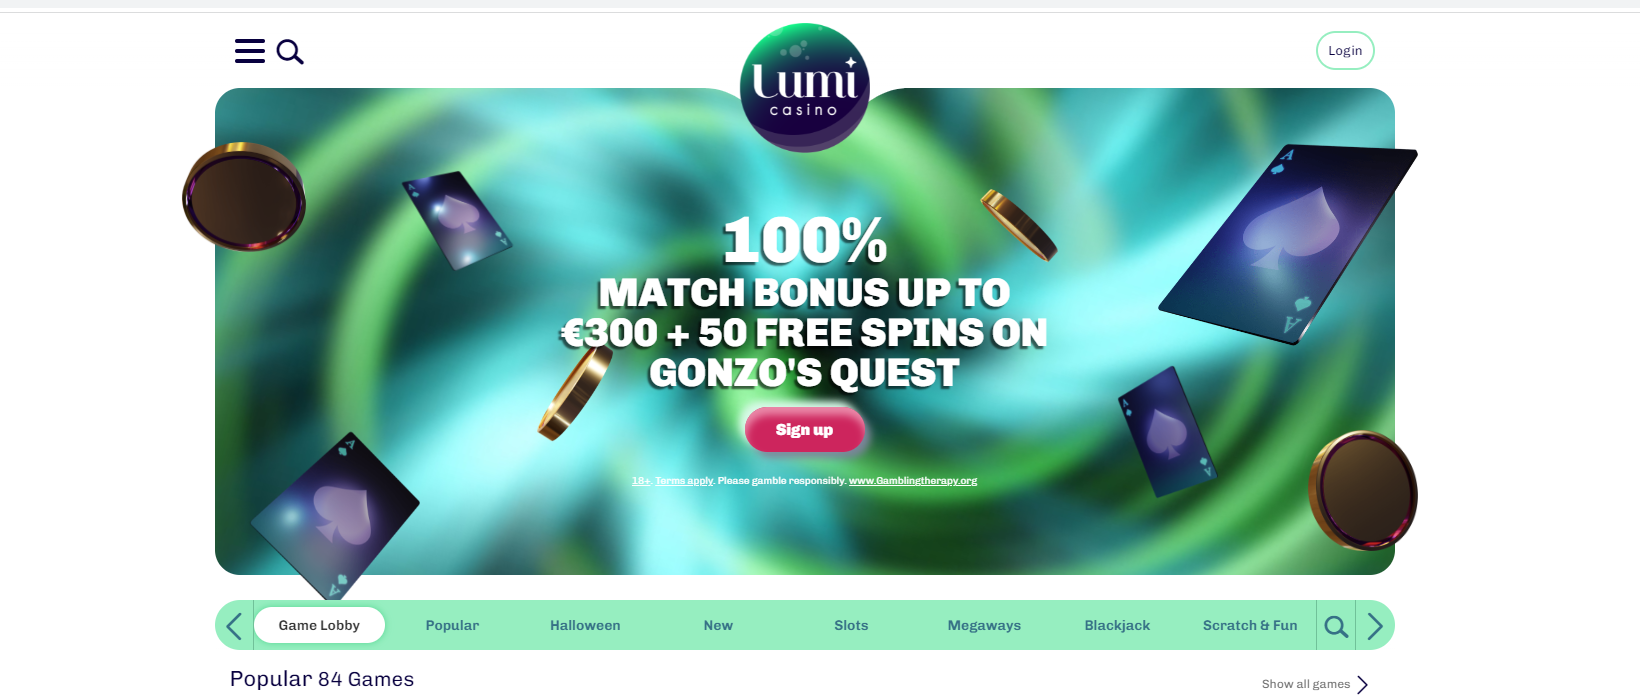 Startsida för Lumi Casino.